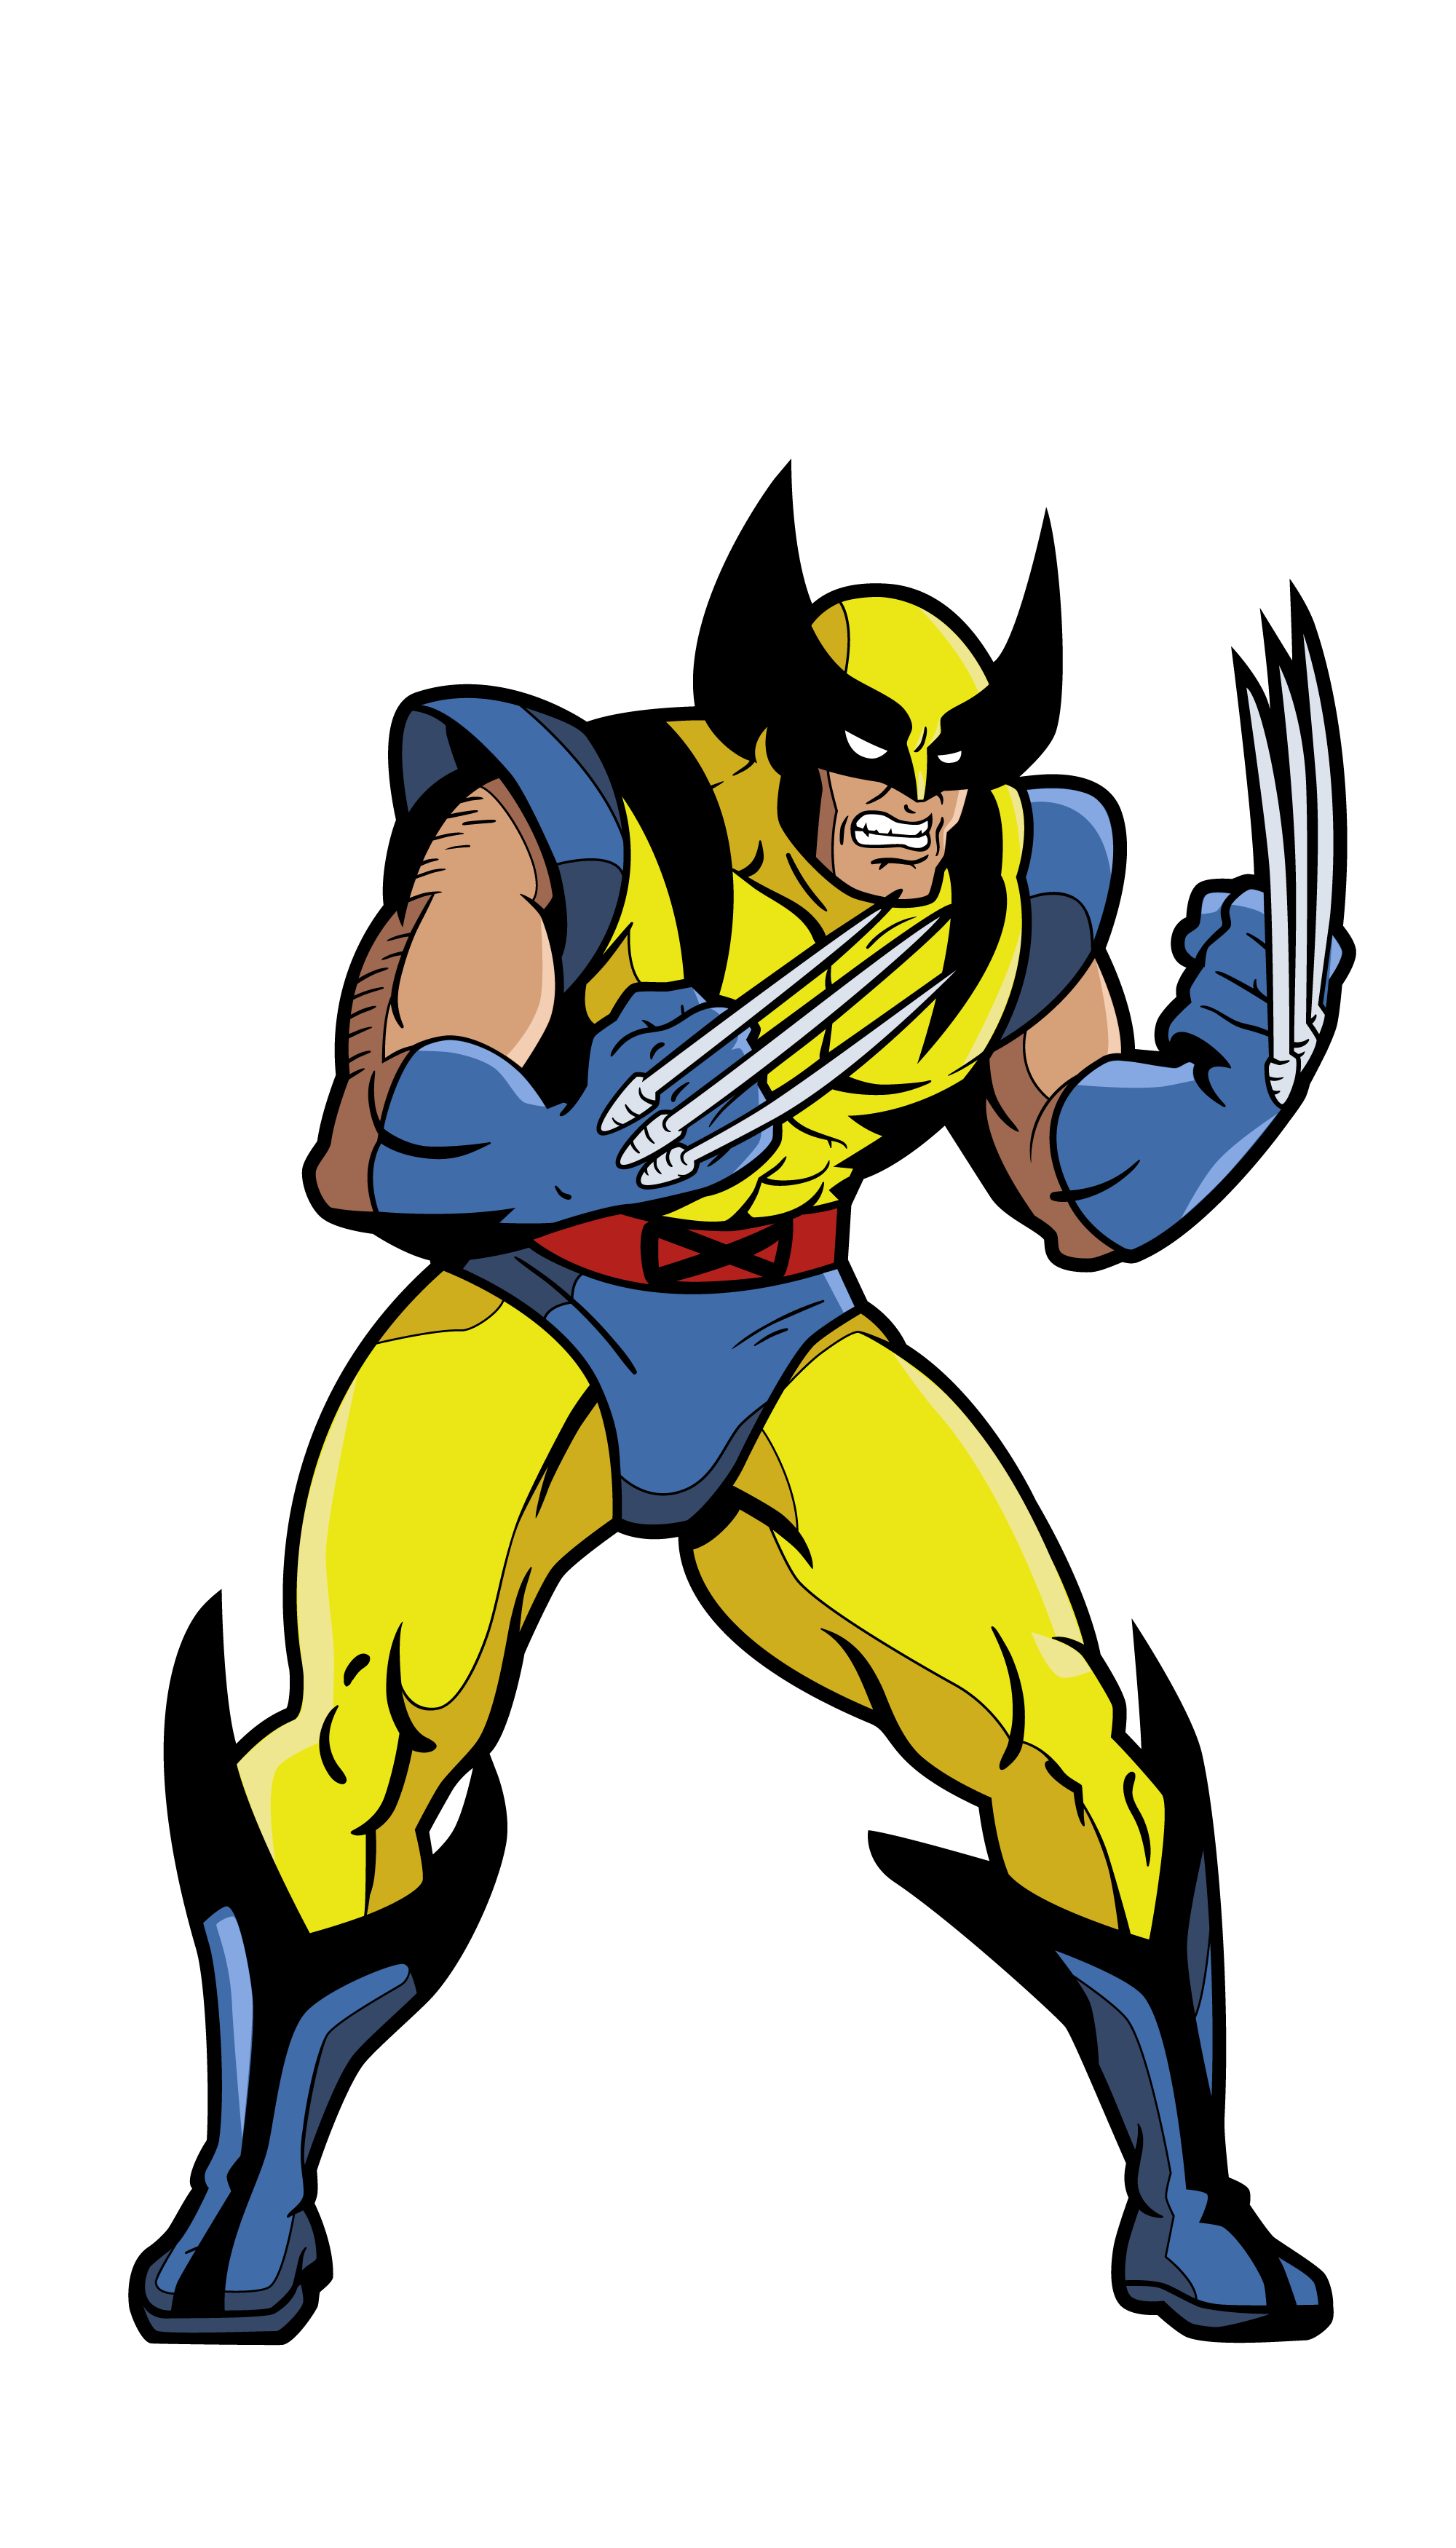 X-Men: Wolverine FiGPiN #437